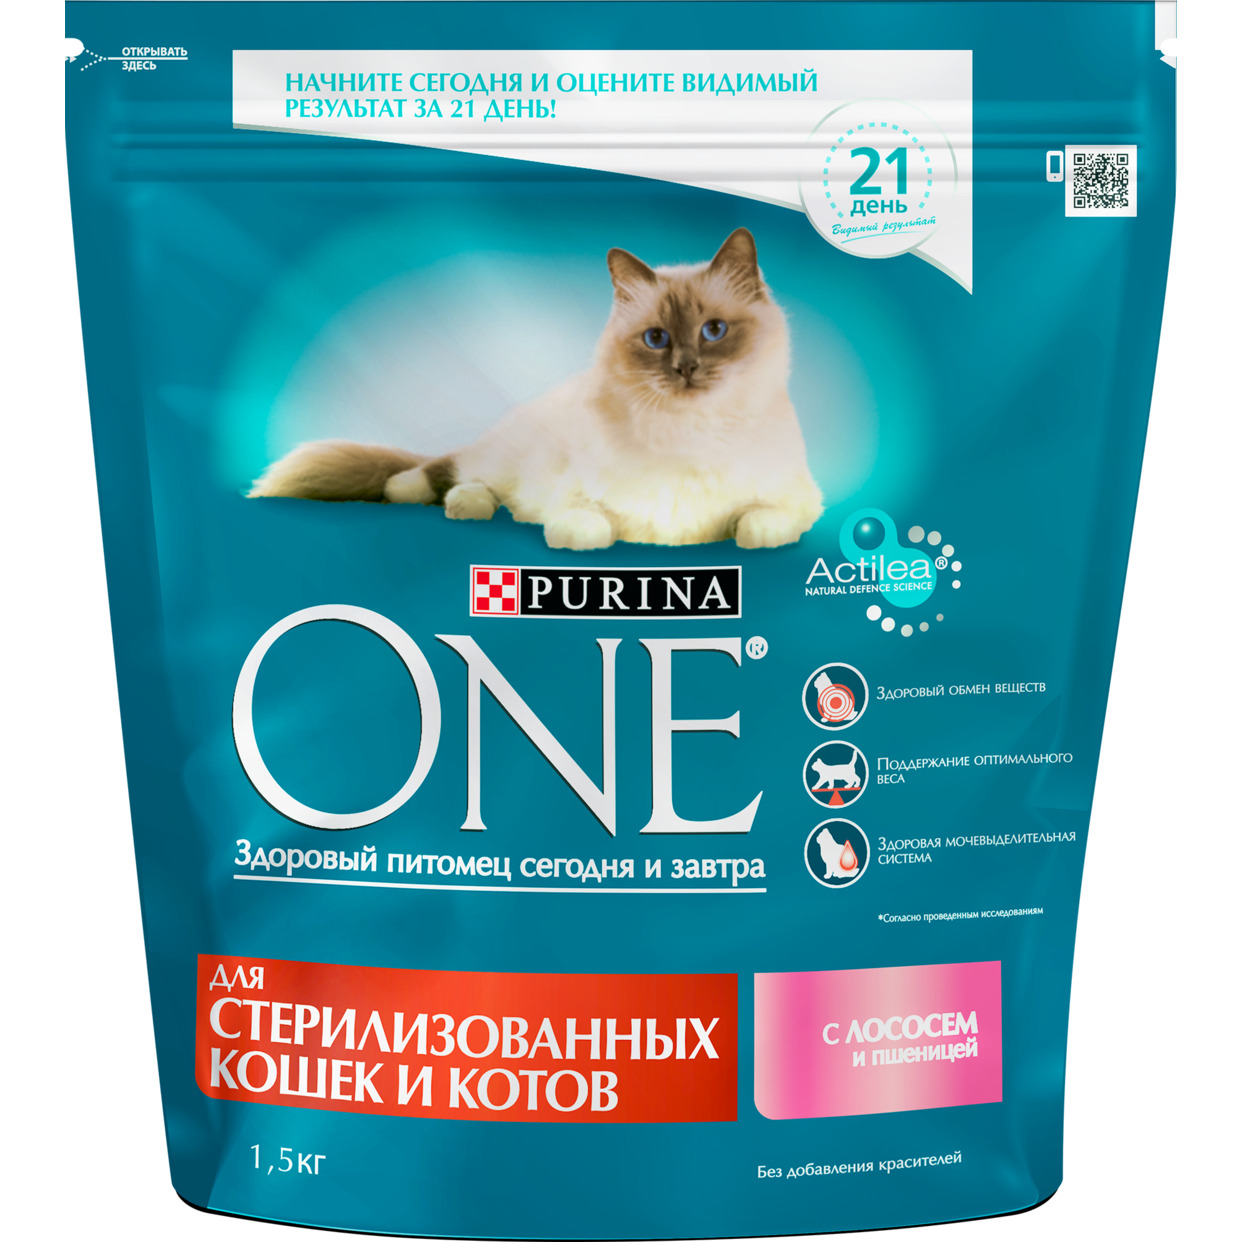 Сухой корм для кошек Purina One для стерилизованных кошек с лососем и пшеницей 1.5кг по акции в Пятерочке